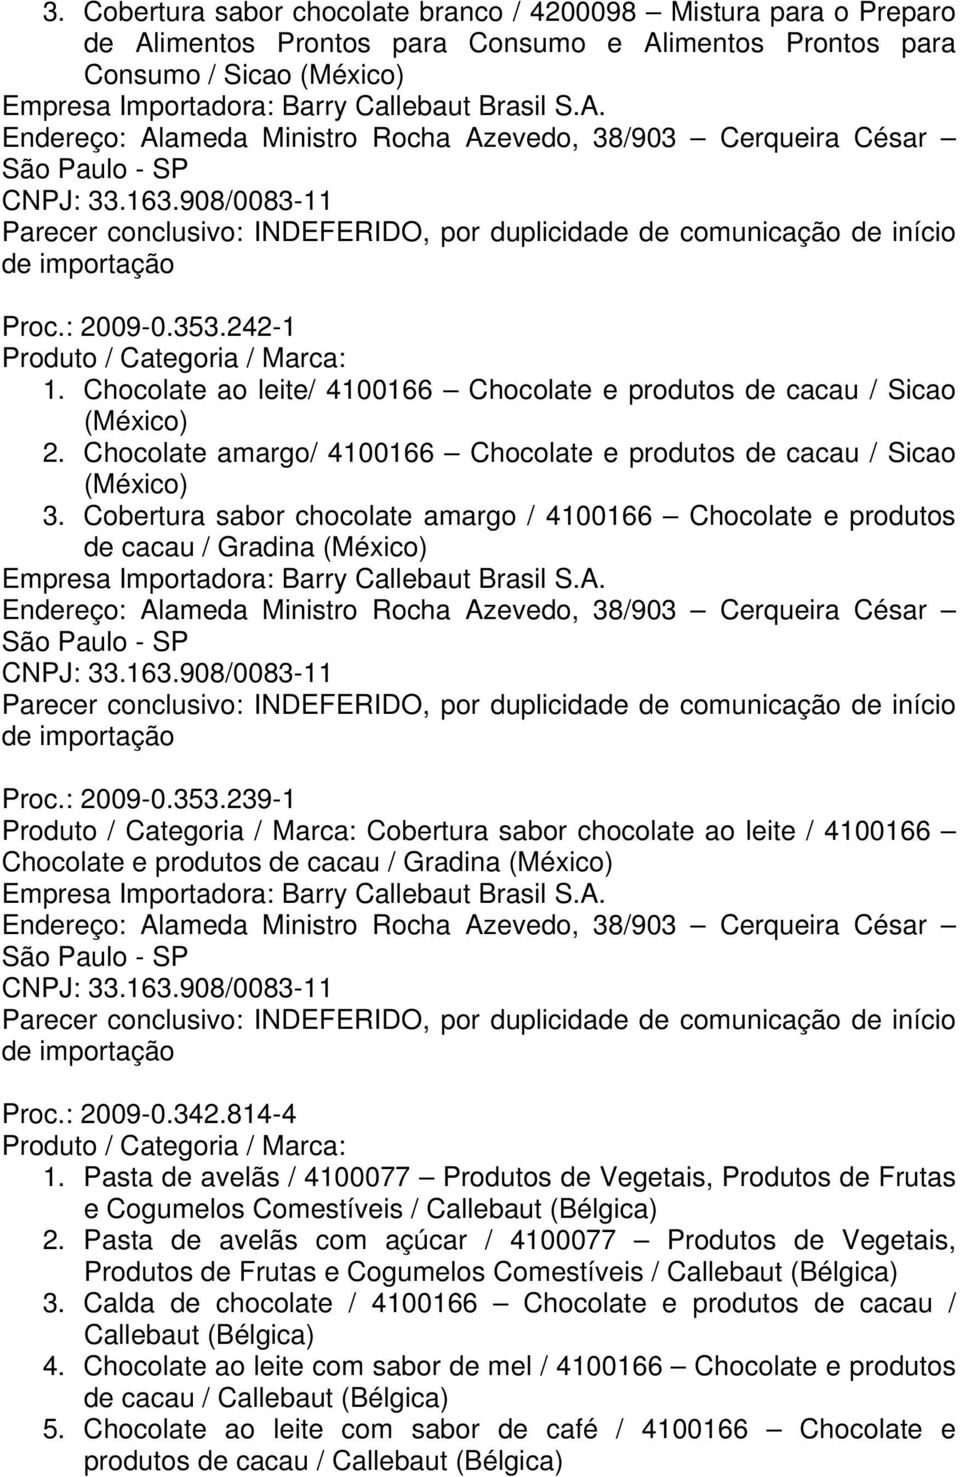 Cobertura sabor chocolate amargo / 4100166 Chocolate e produtos de cacau / Gradina Proc.: 2009-0.353.239-1 Cobertura sabor chocolate ao leite / 4100166 Chocolate e produtos de cacau / Gradina Proc.